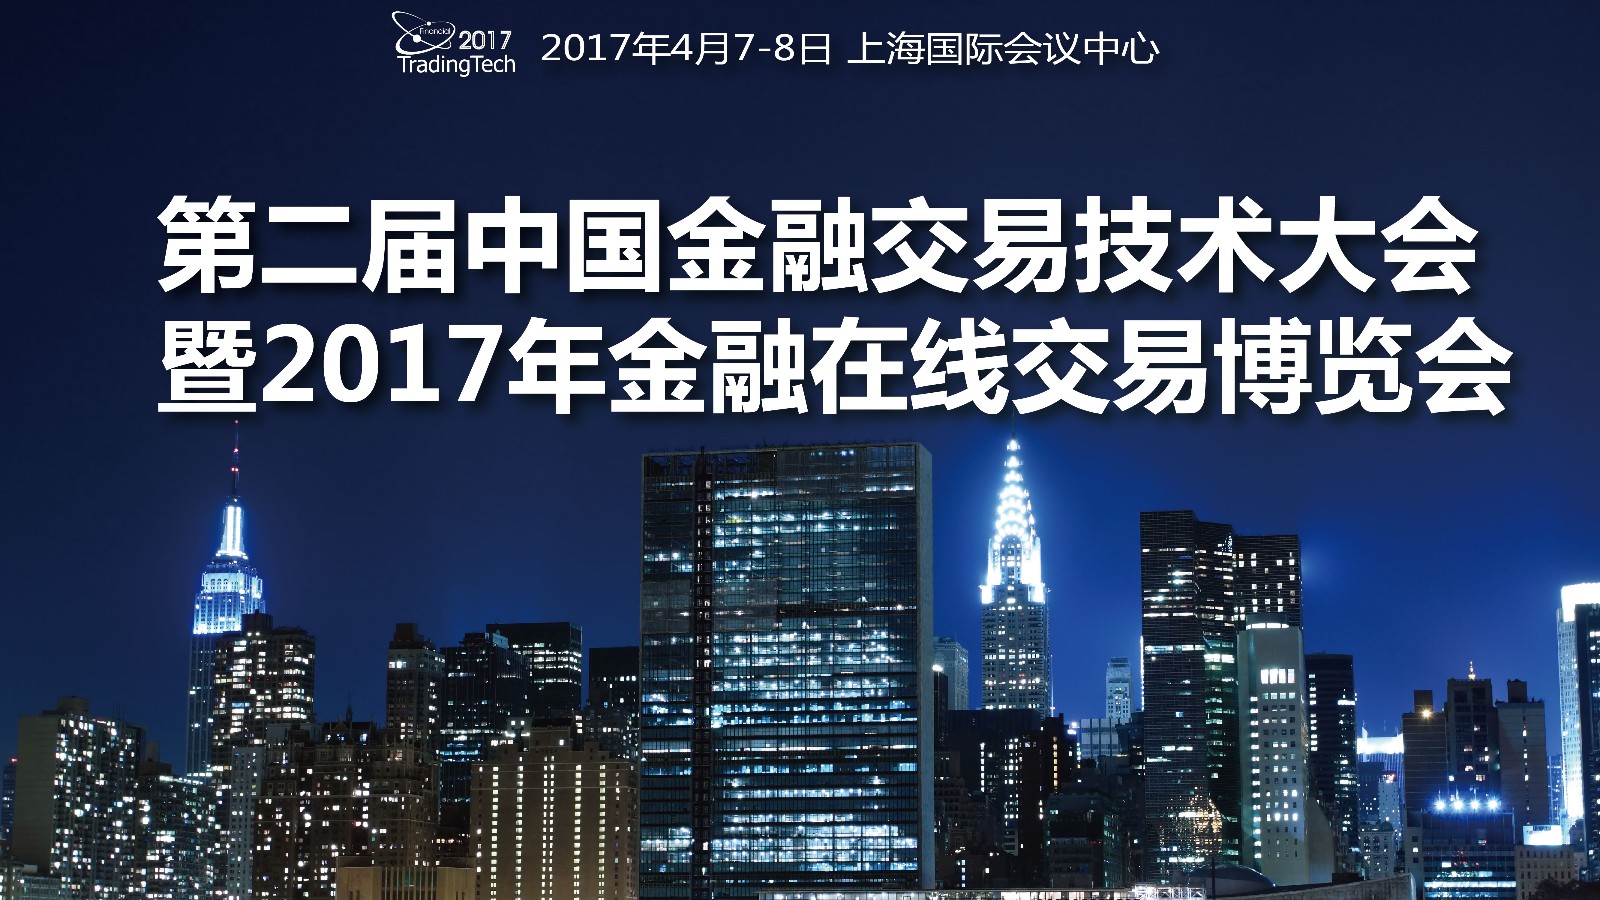 第二届金融交易技术大会CFTTC开幕.jpg